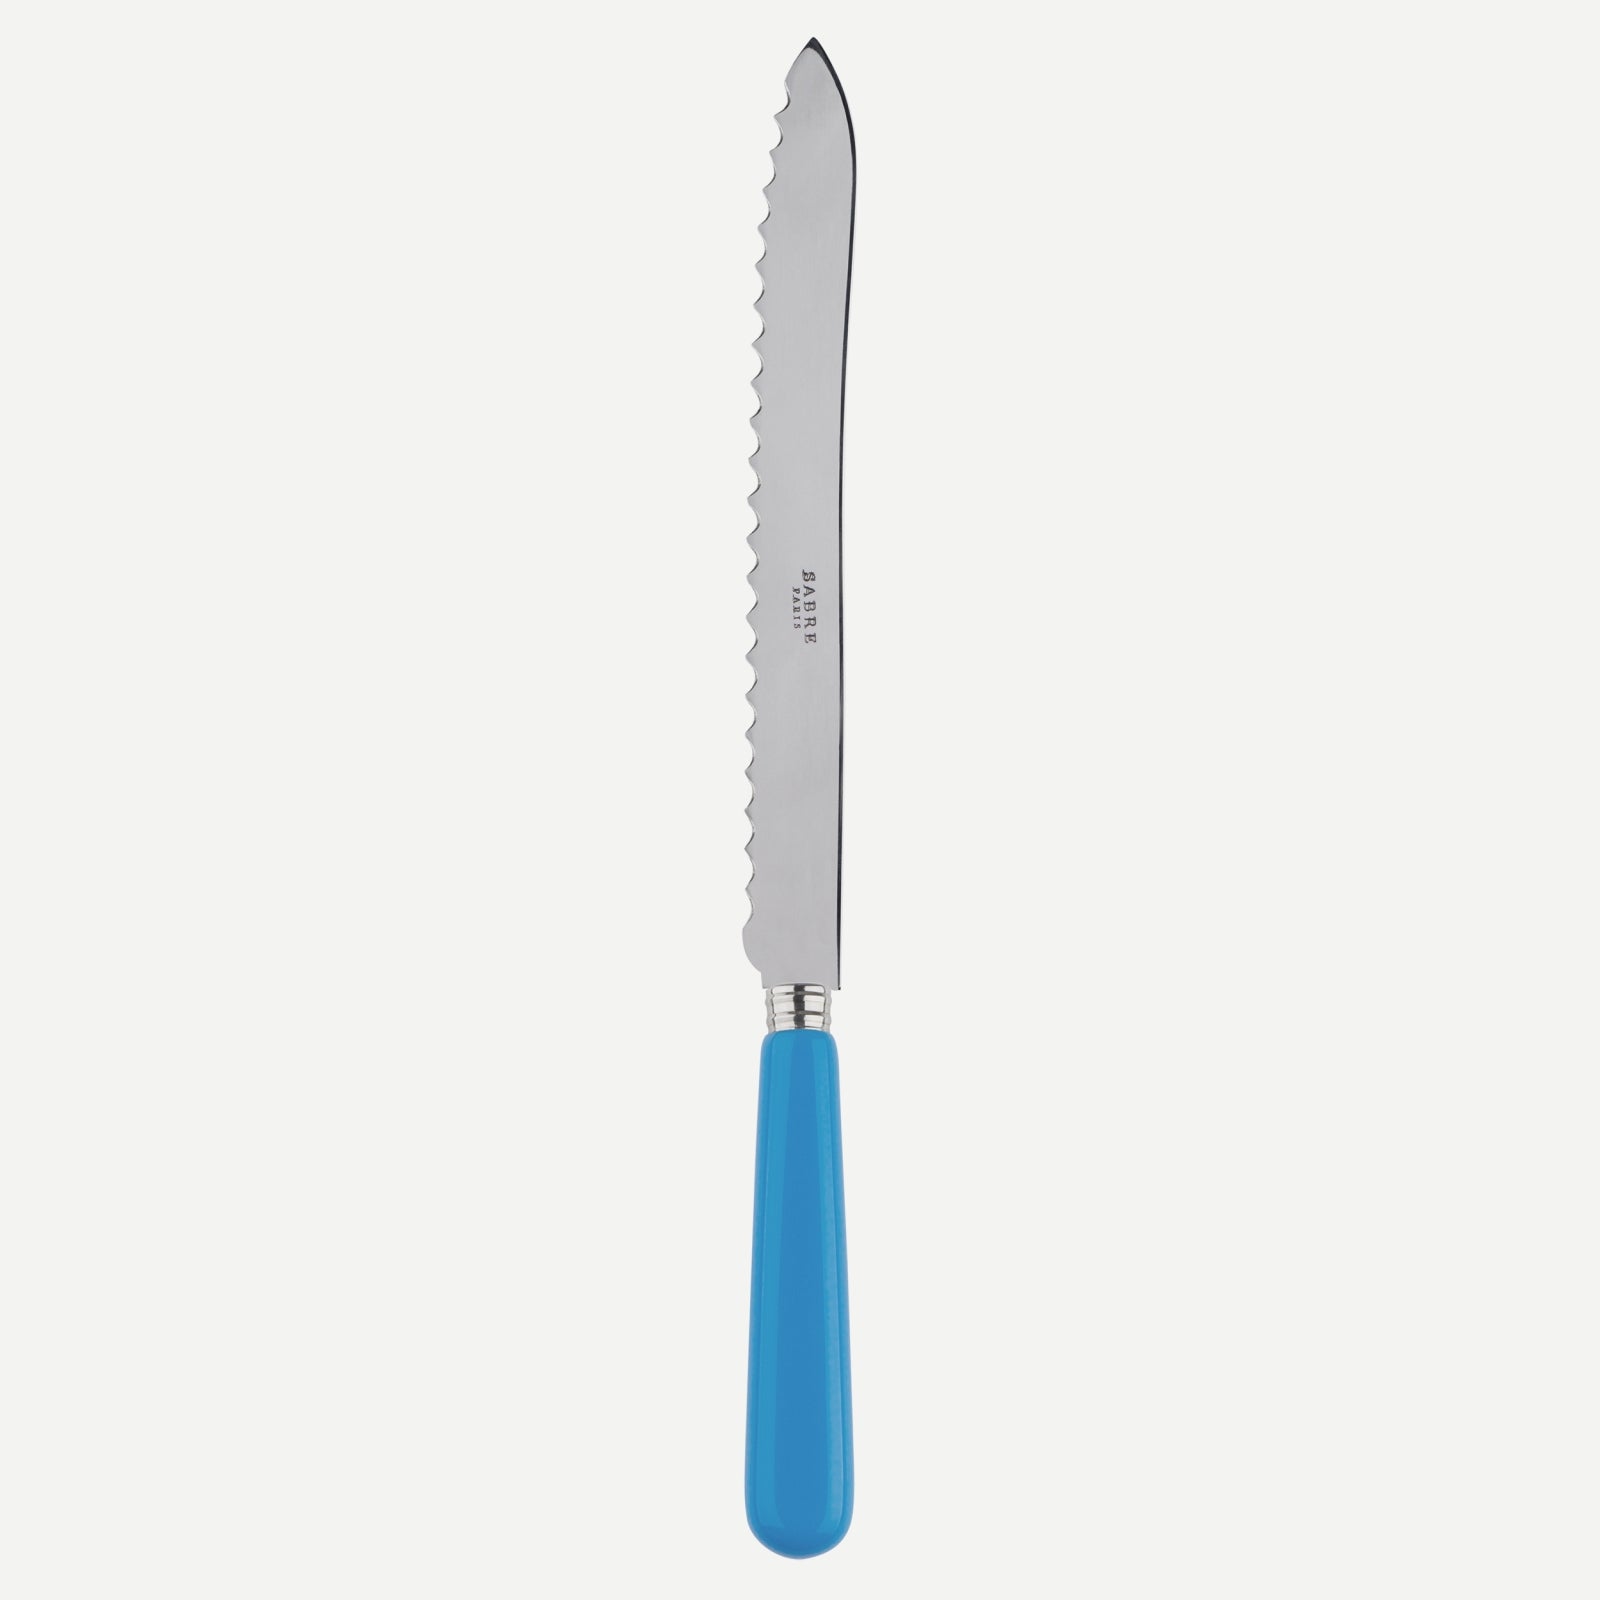 Bread knife - Pop unis - Cerulean blue